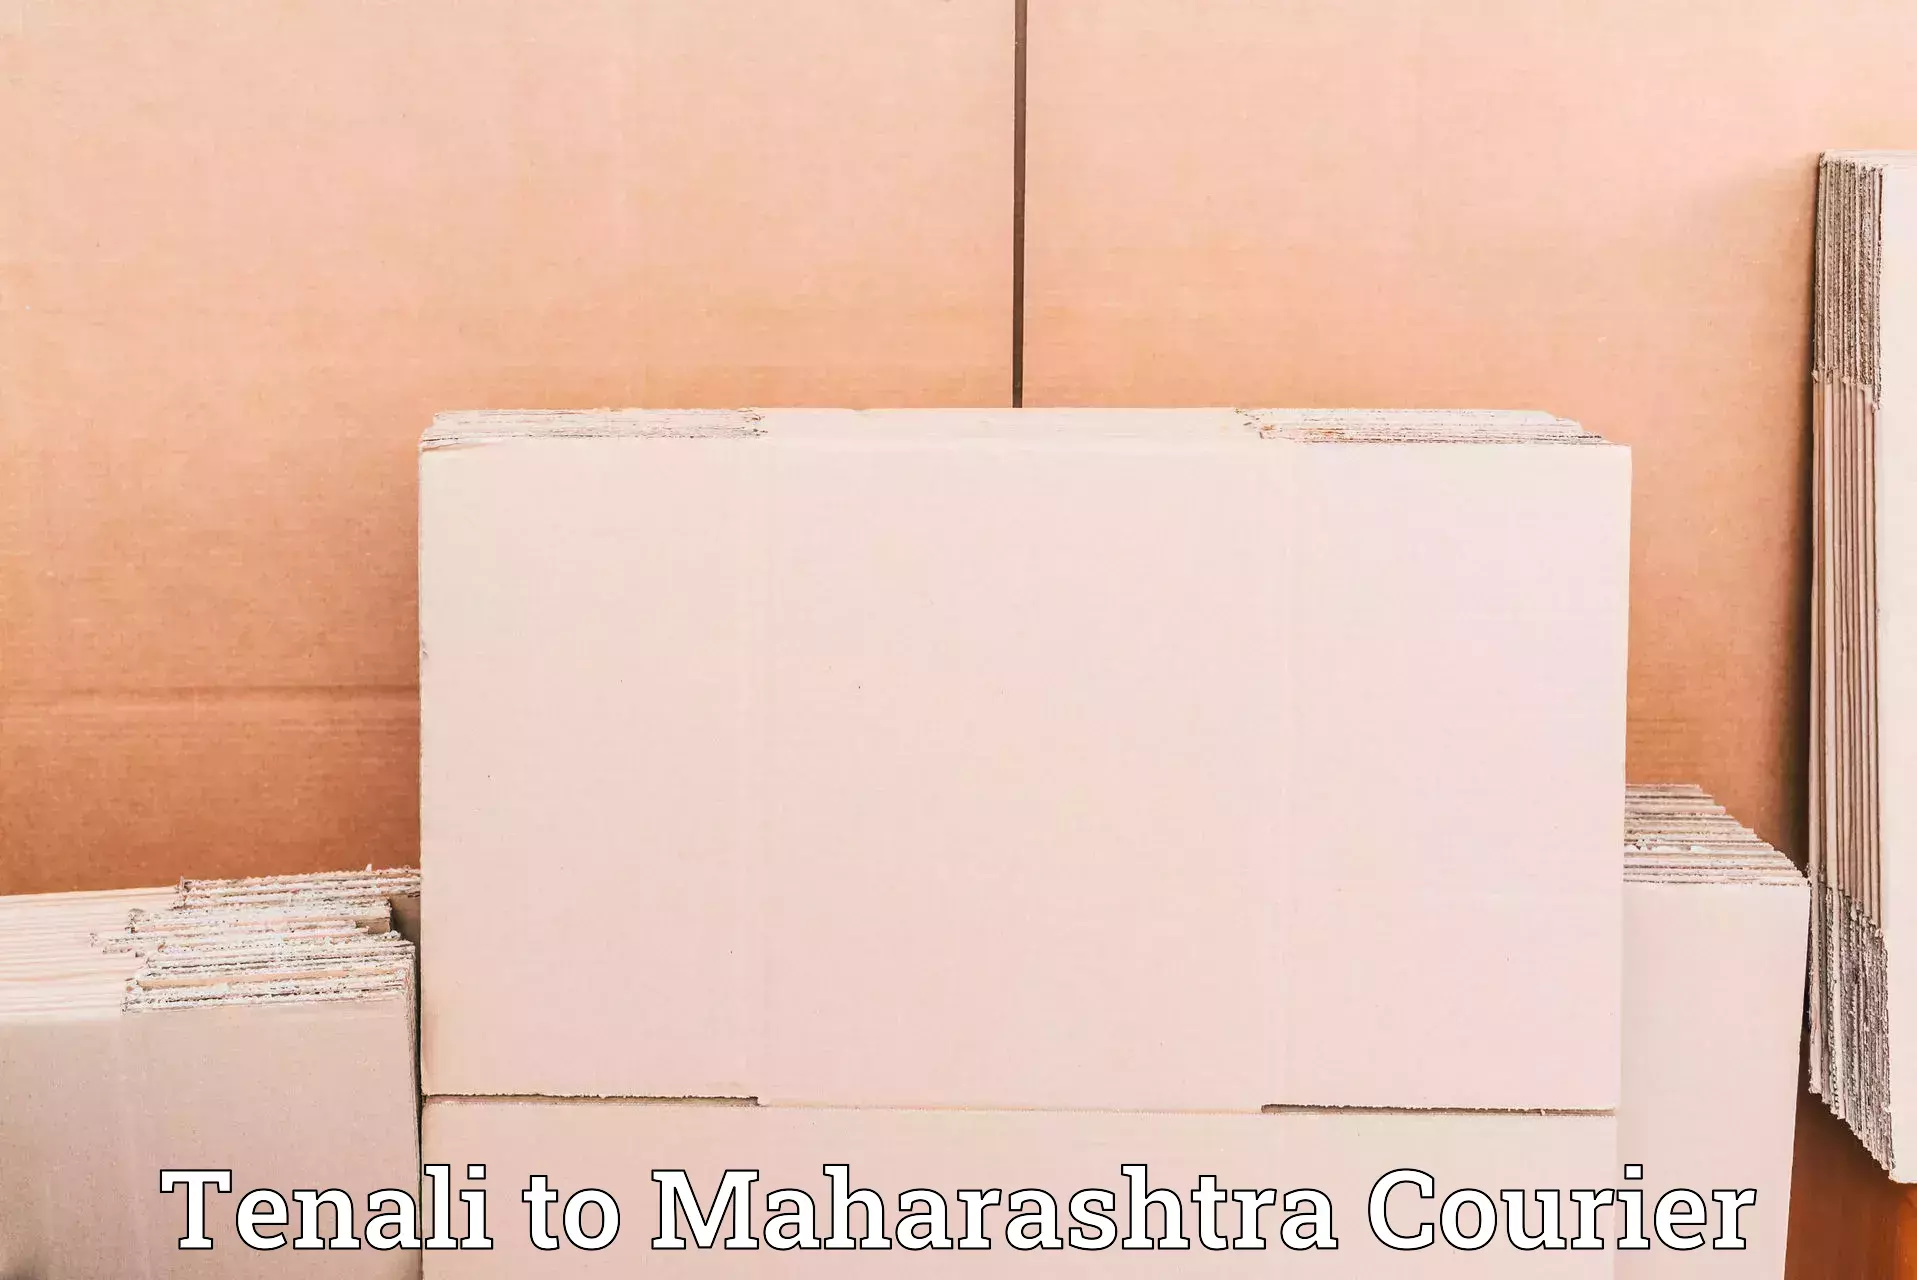 Quick booking process Tenali to Mahabaleshwar